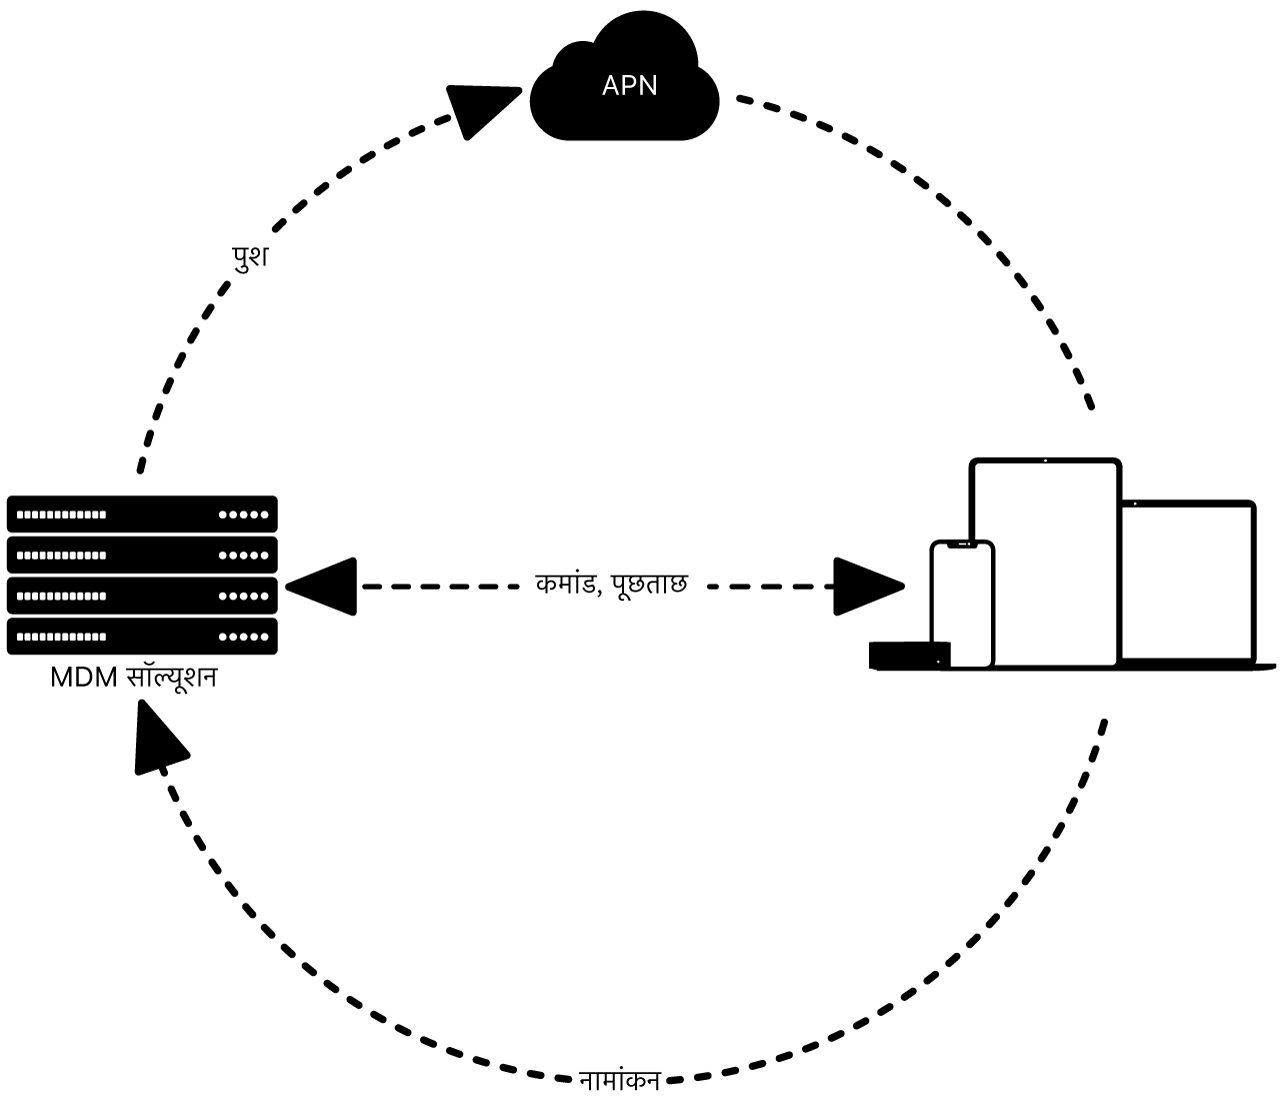 एक डायग्राम जो दर्शाता है कि MDM समाधान के साथ APN का उपयोग कैसे किया जाता है।